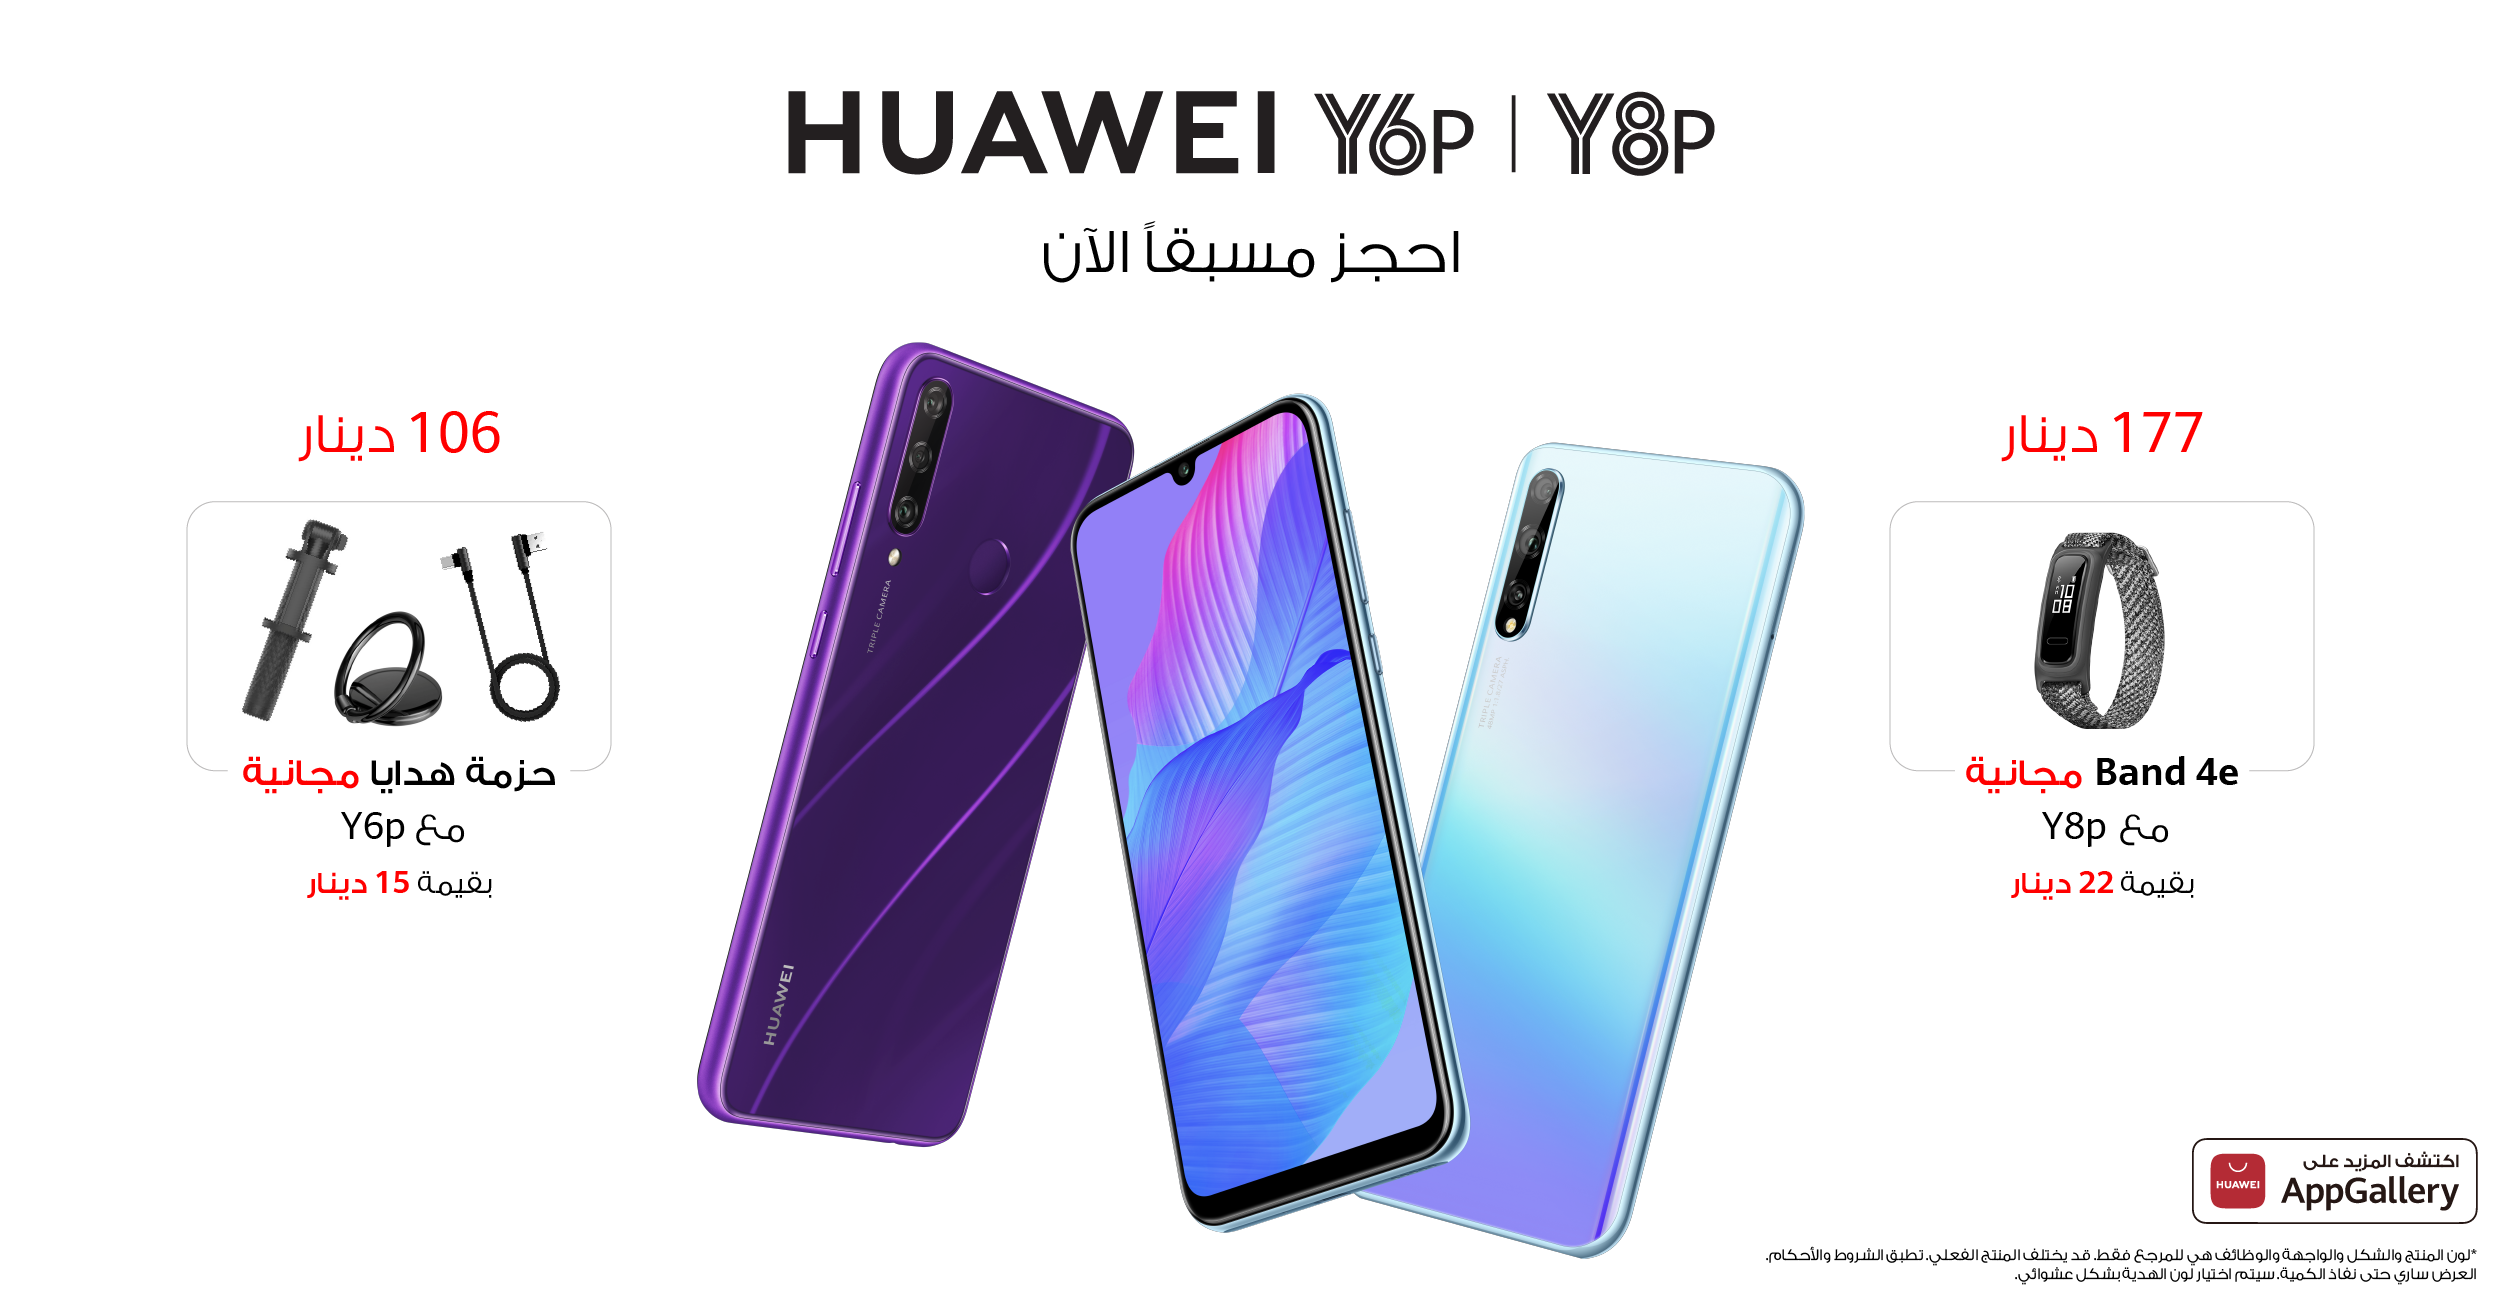 هاتفا Huawei Y8p وHuawei Y6p متوفران الآن للطلب المسبق في الأردن - جريدة  الغد